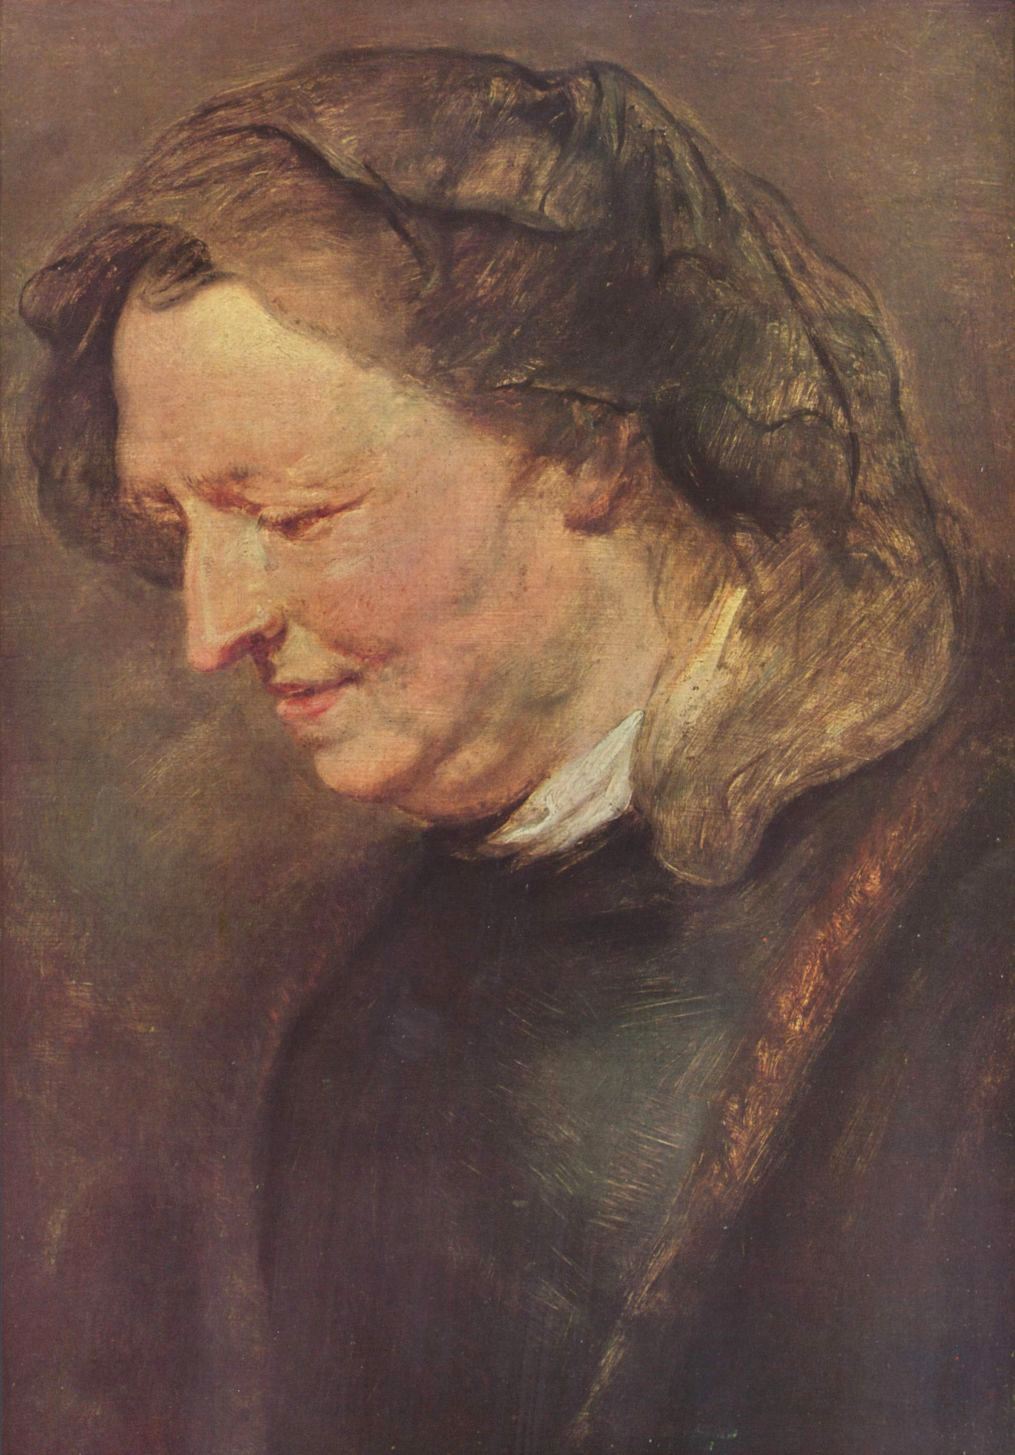 Питер Пауль Рубенс. "Портрет пожилой женщины". 1616-1618. Старая Пинакотека, Мюнхен.